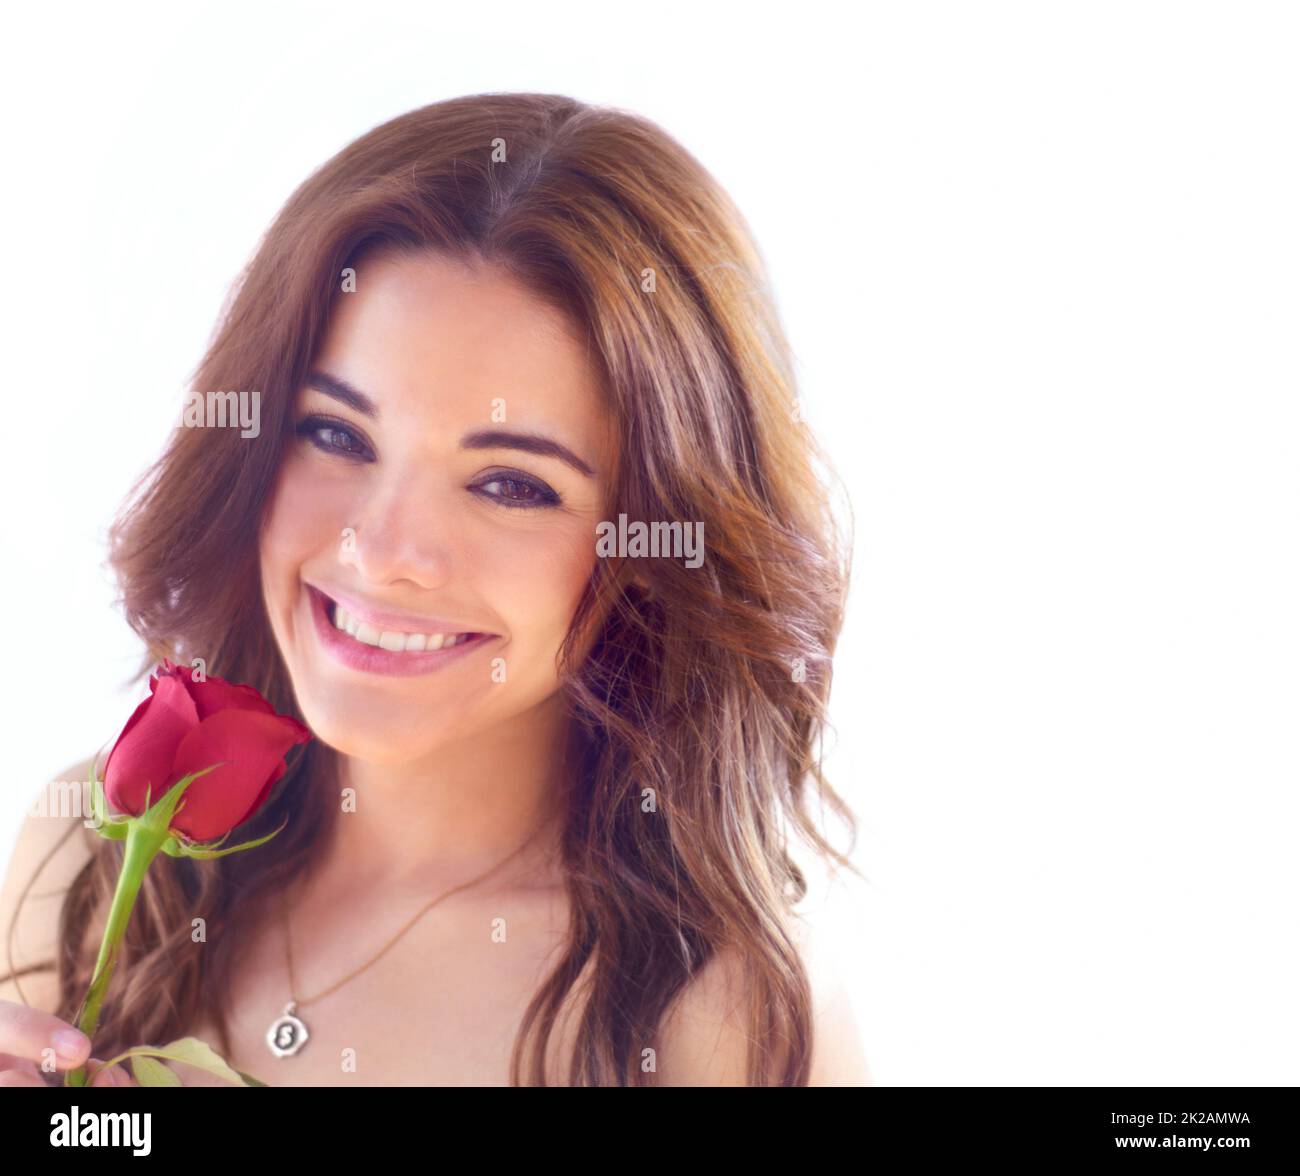 Le rose sono rosse.... Ritratto di una giovane donna attraente che tiene una sola rosa rossa. Foto Stock